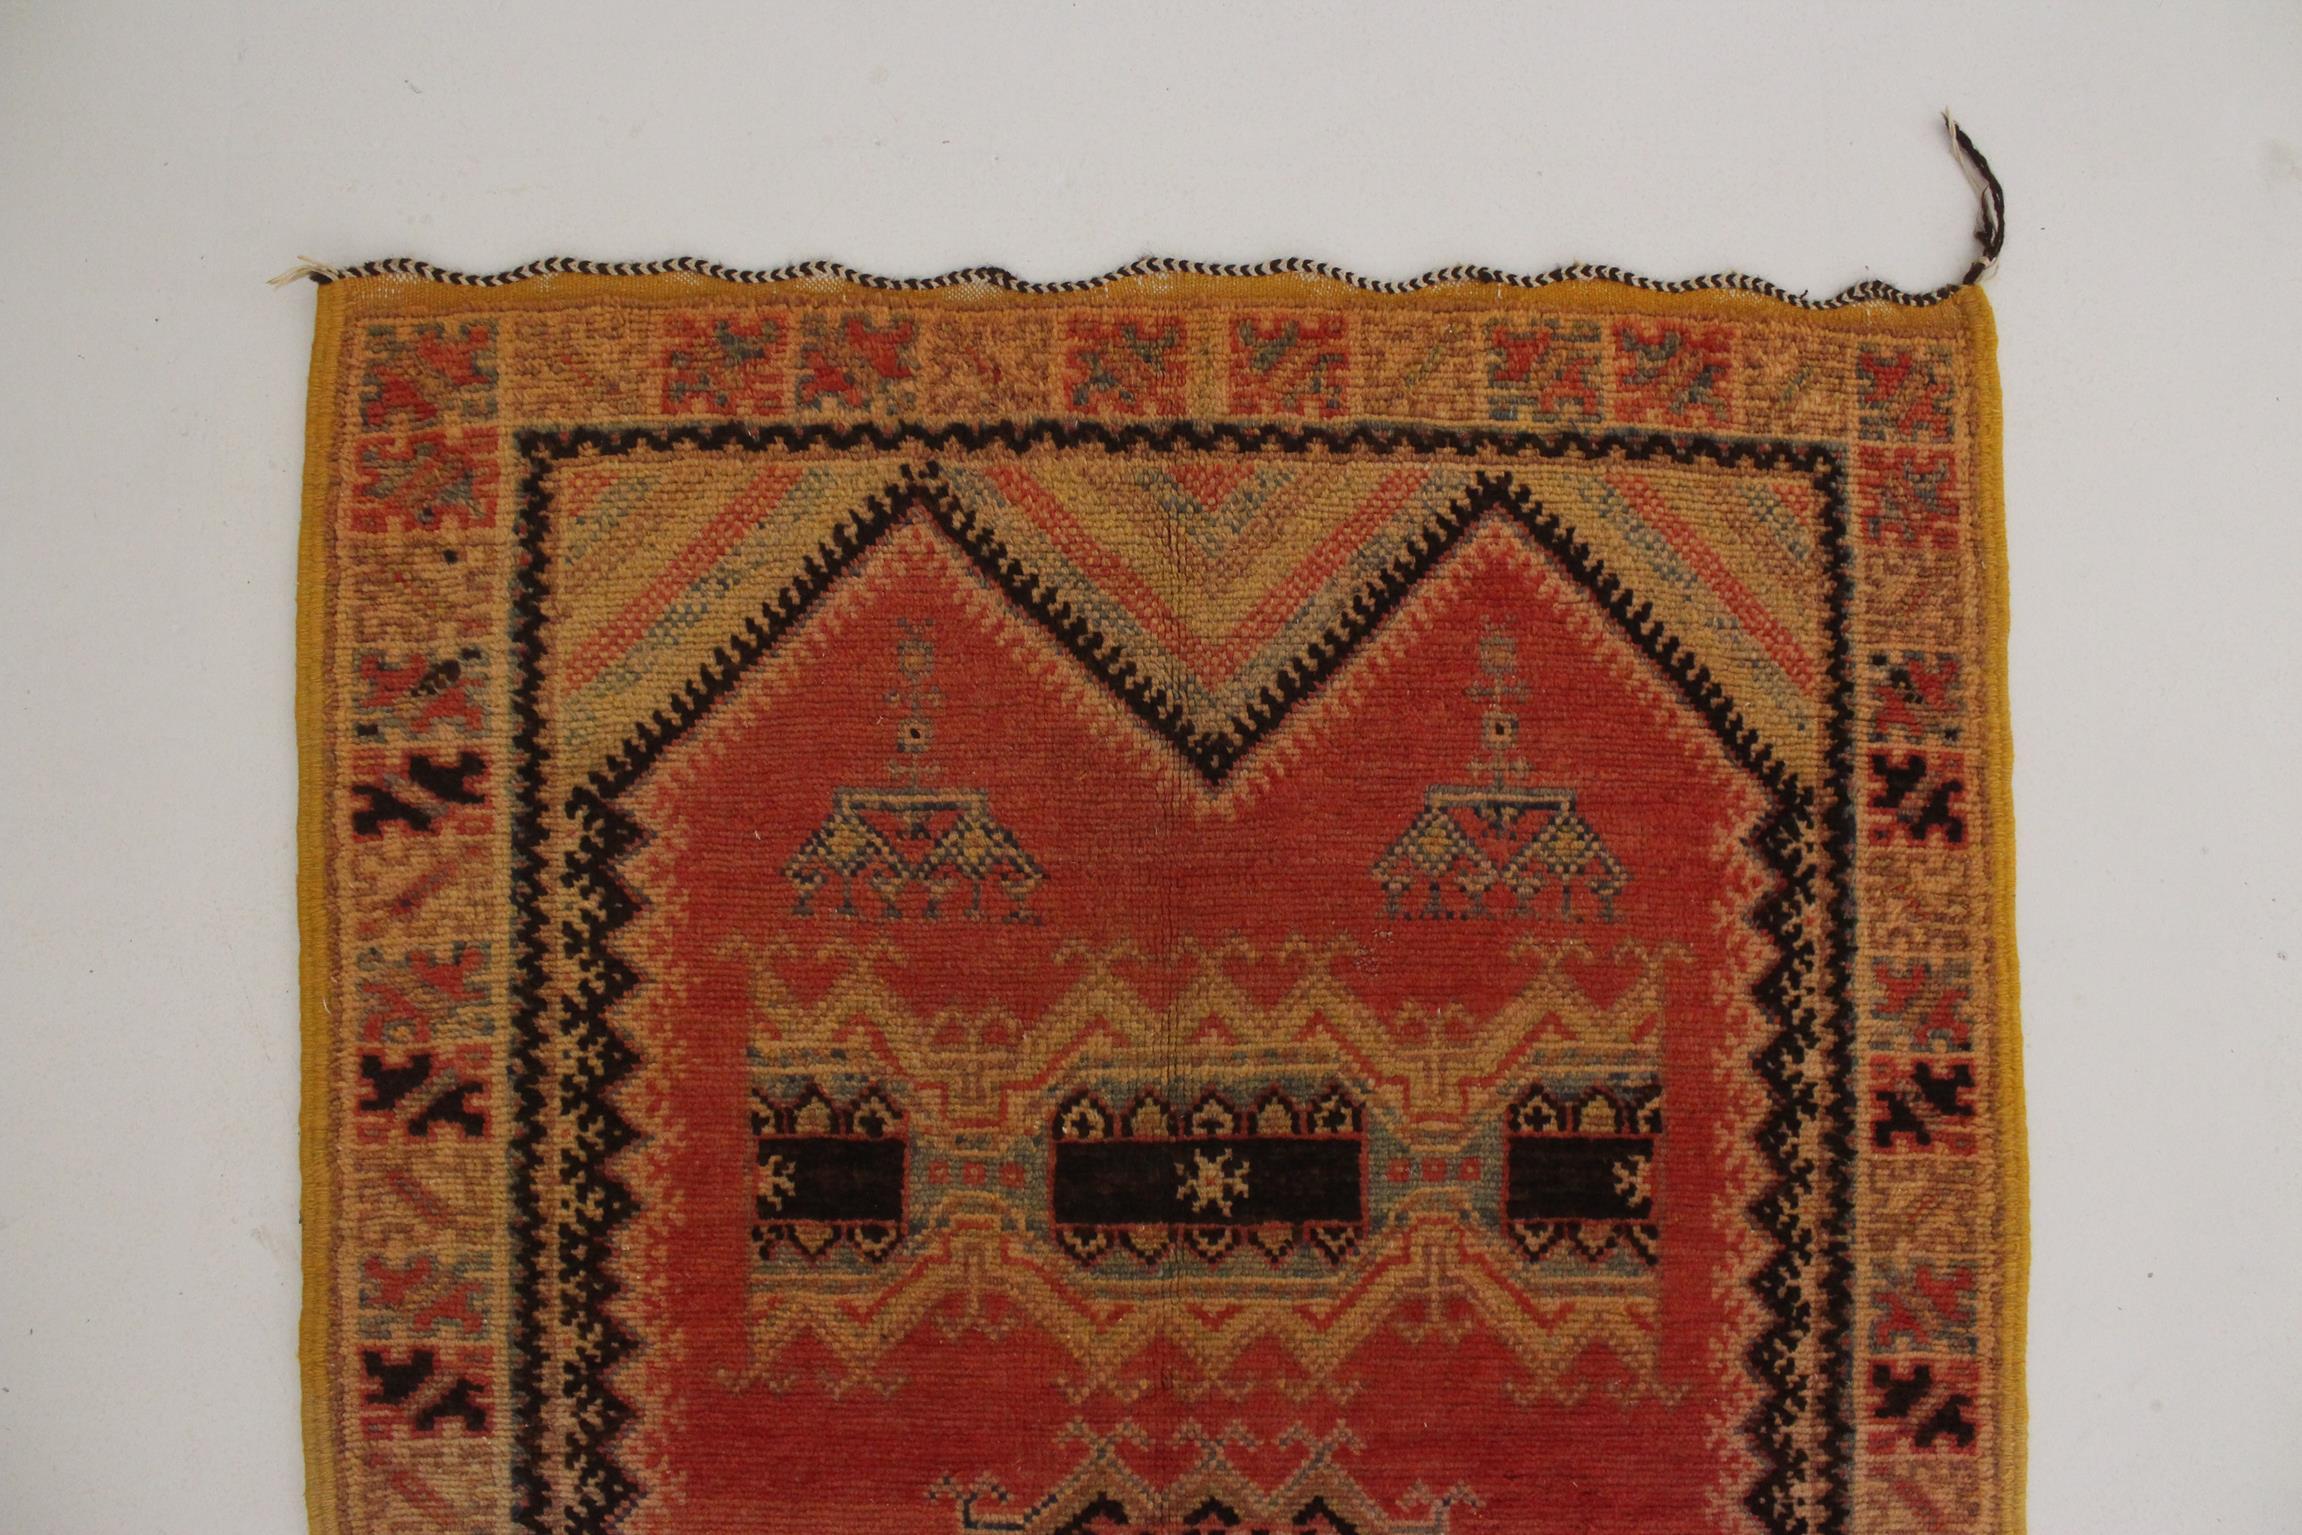 Vintage Moroccan Taznakht rug - Blood orange/black - 3.2x5.8feet / 100x178cm For Sale 1